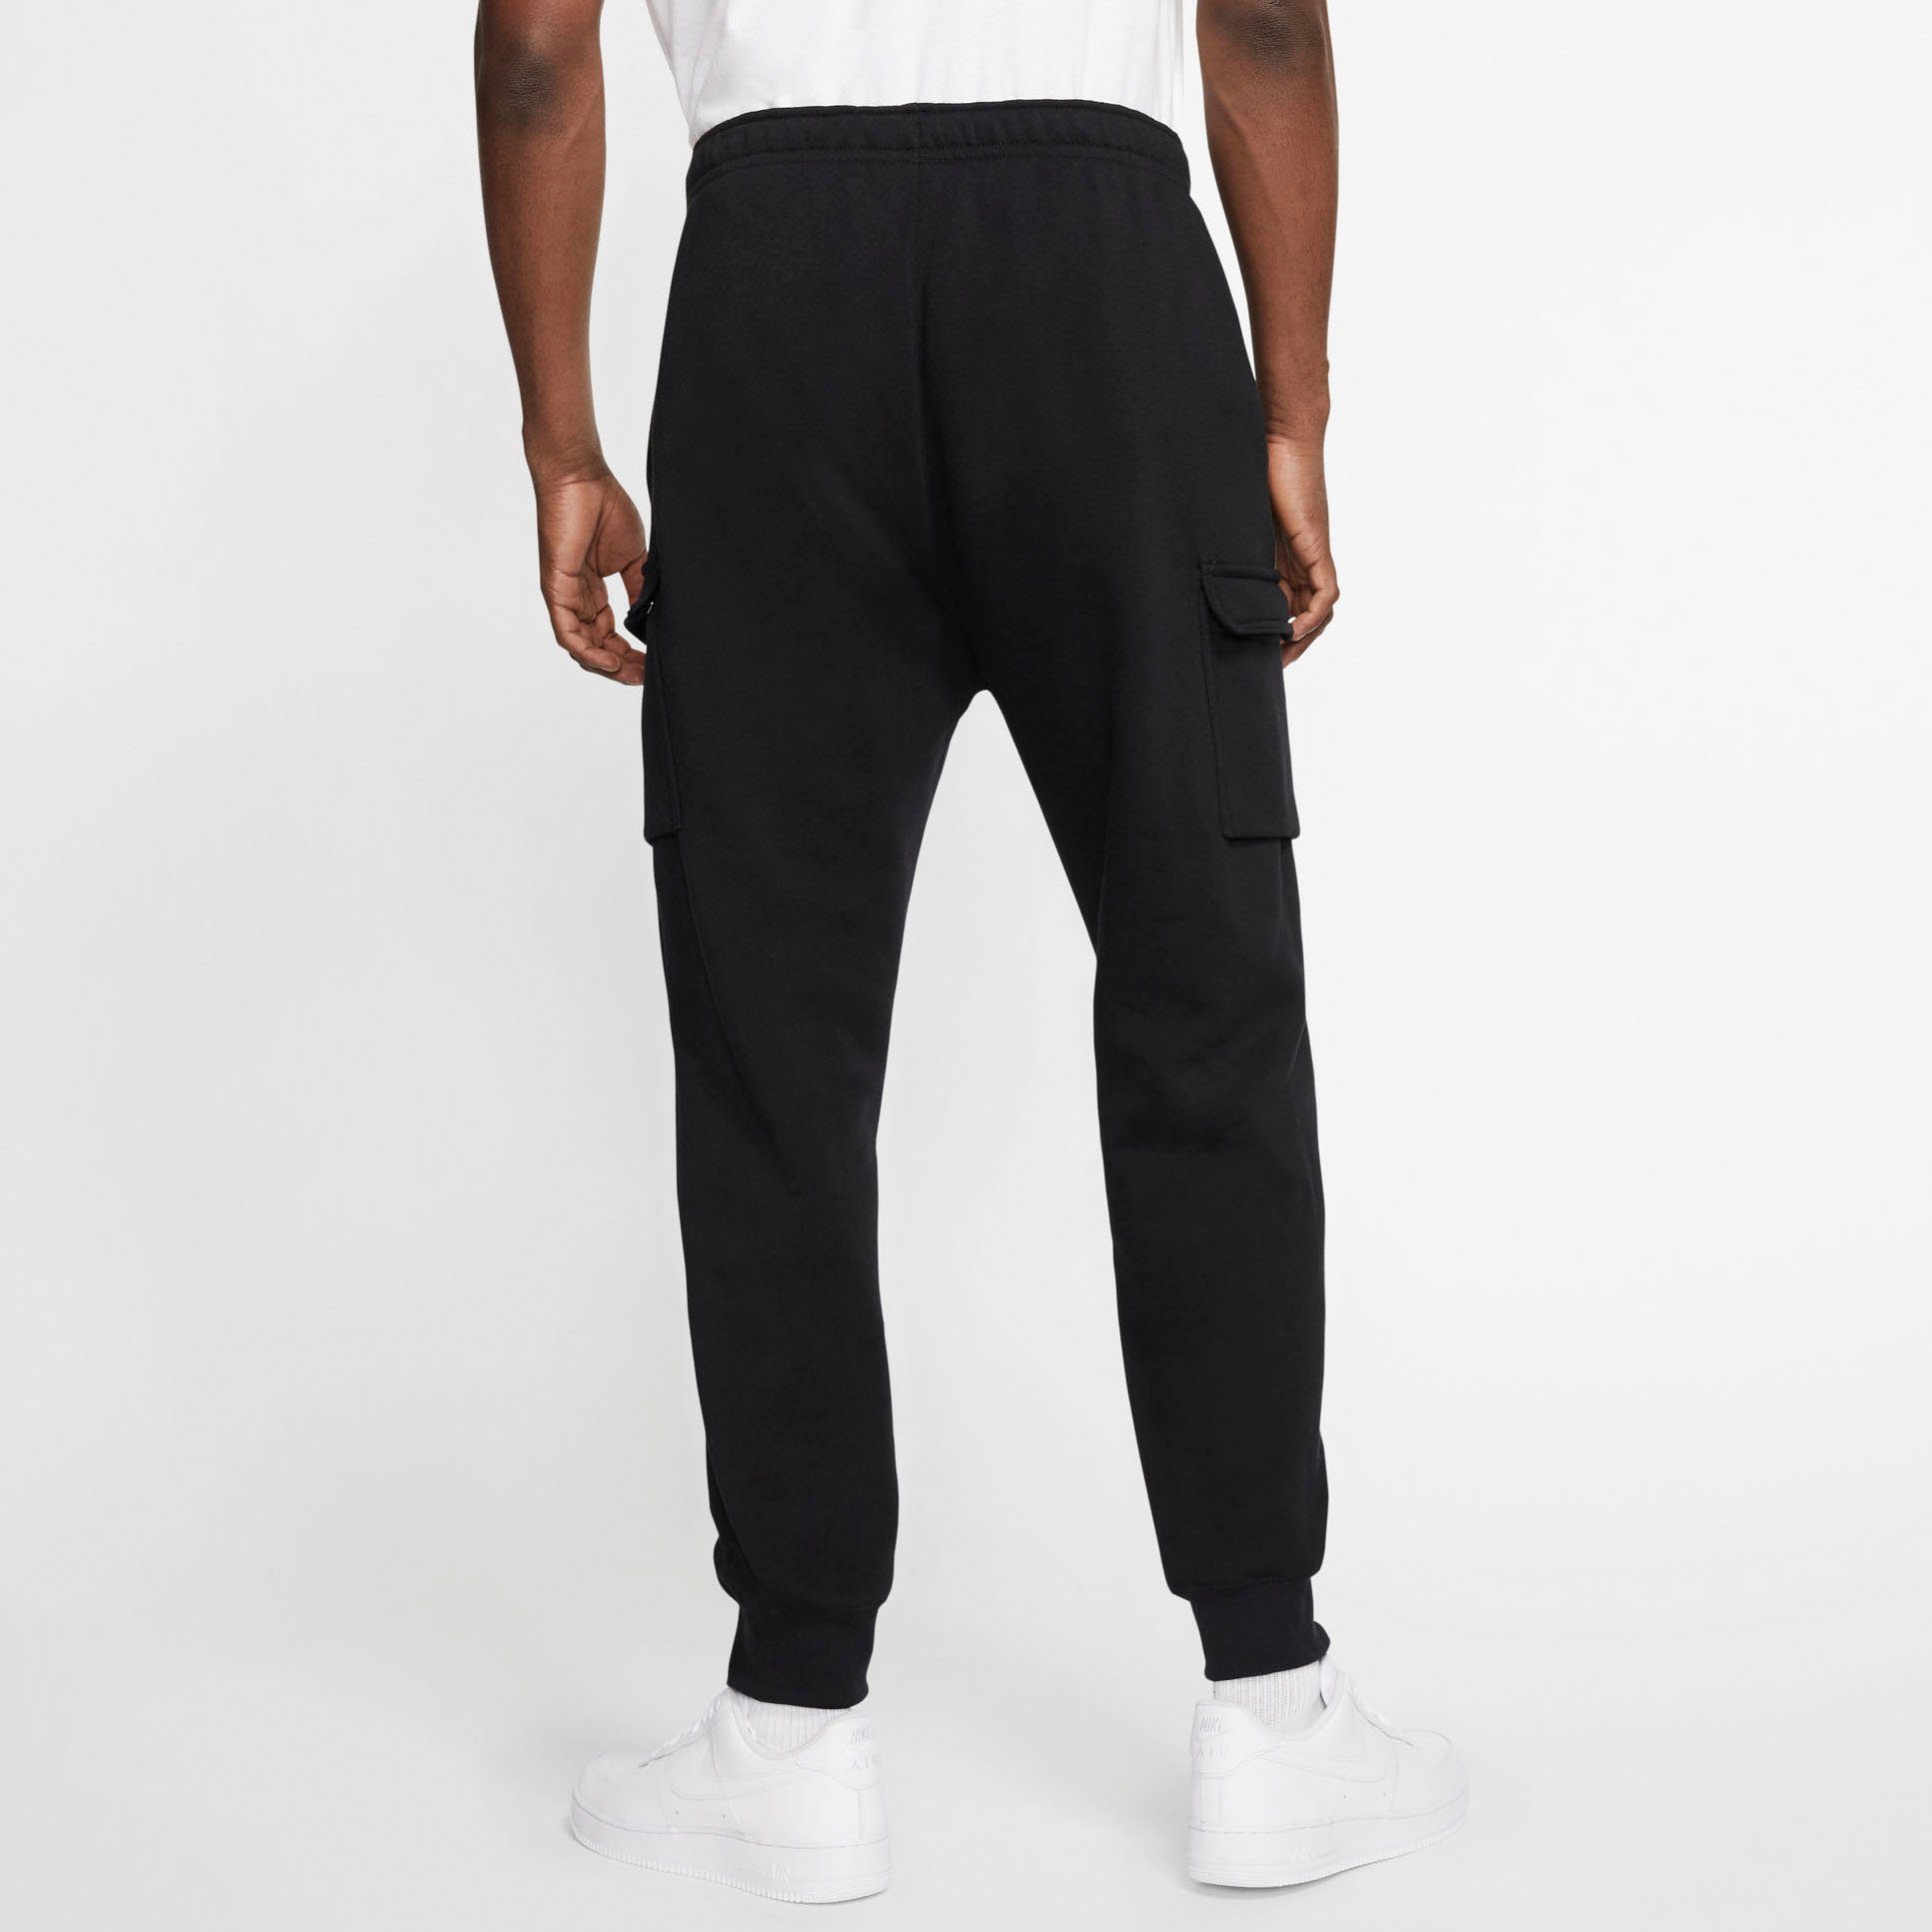 Nike Sportswear schwarz CARGO PANTS MEN'S CLUB Jogginghose FLEECE